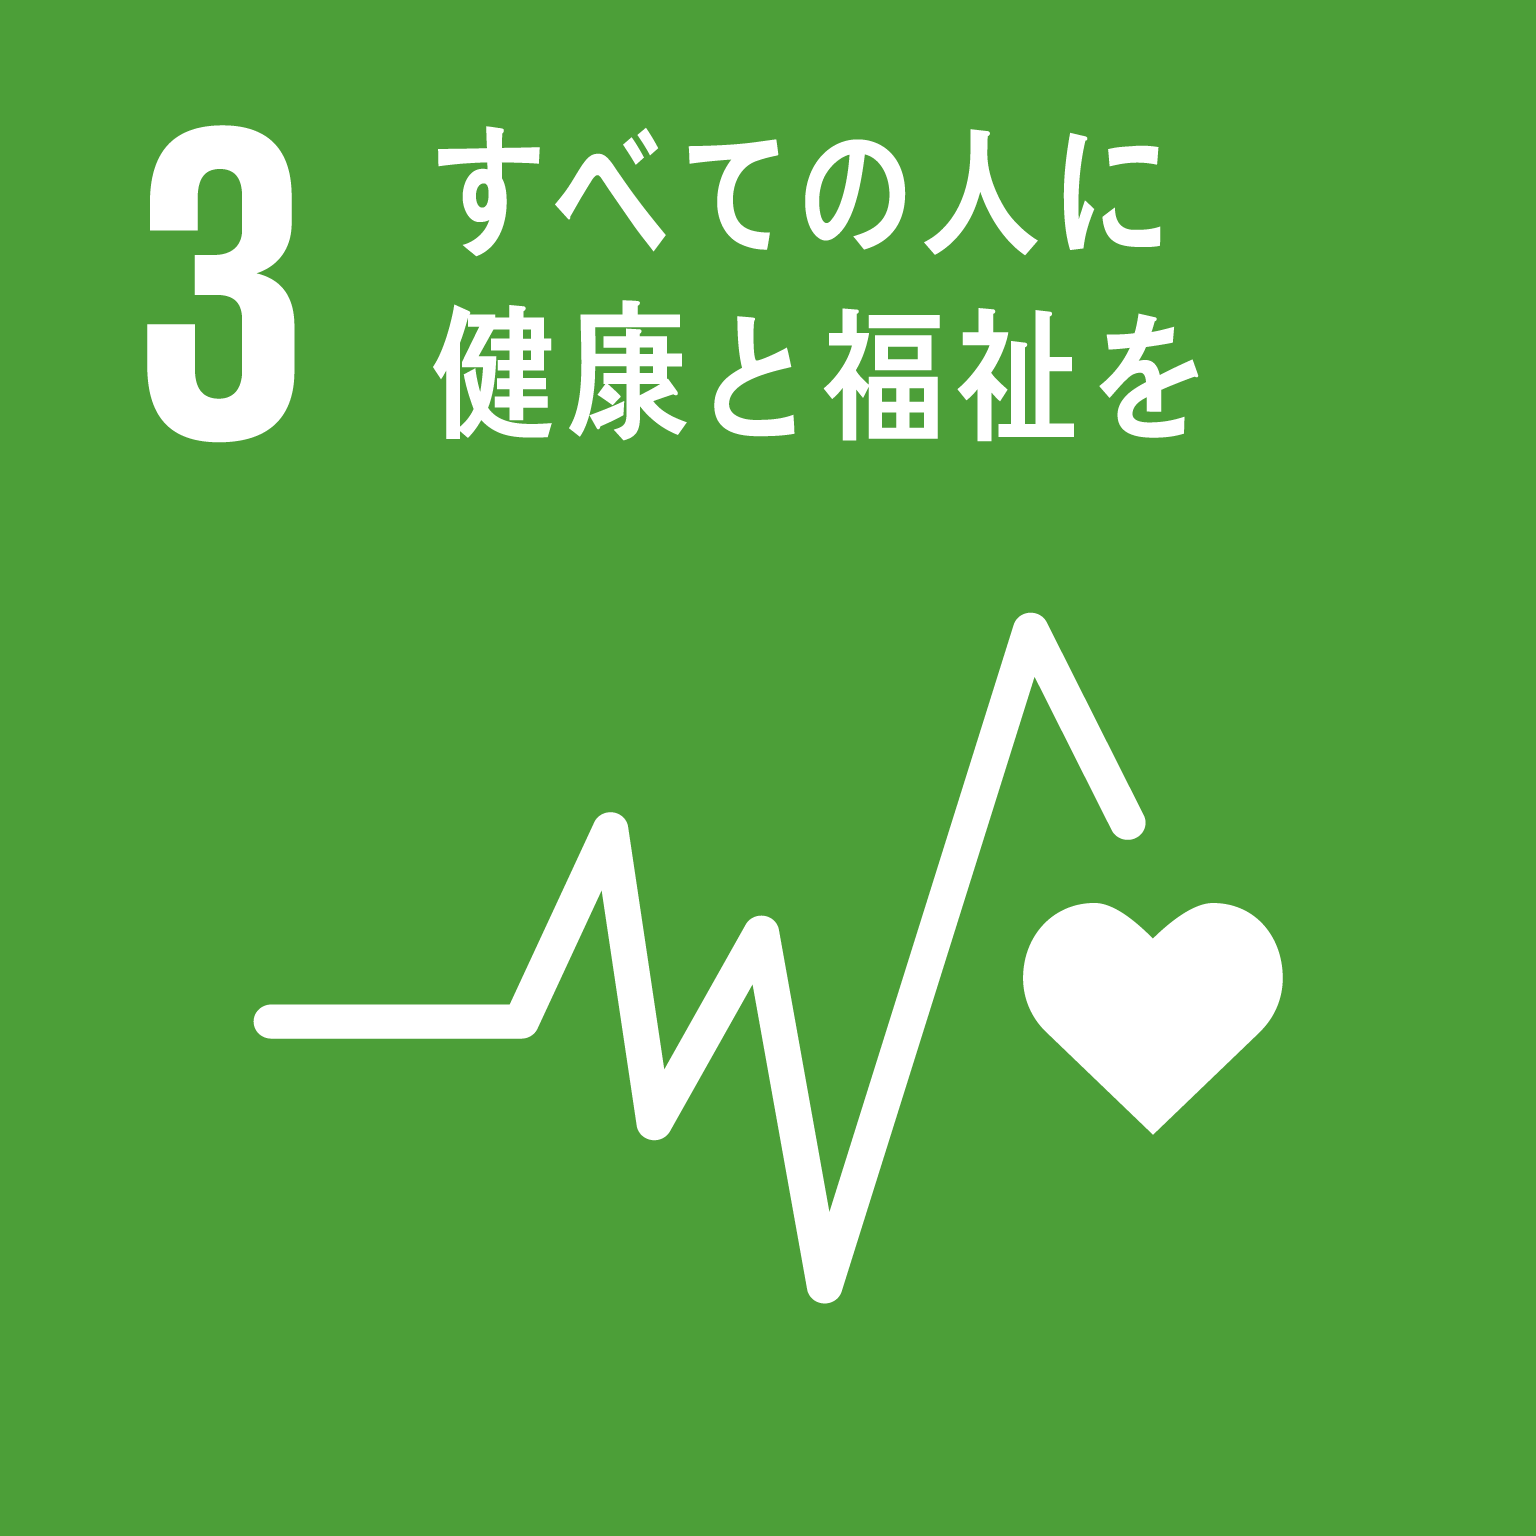 「3.すべての人に健康と福祉を」の文字と目標3のロゴ